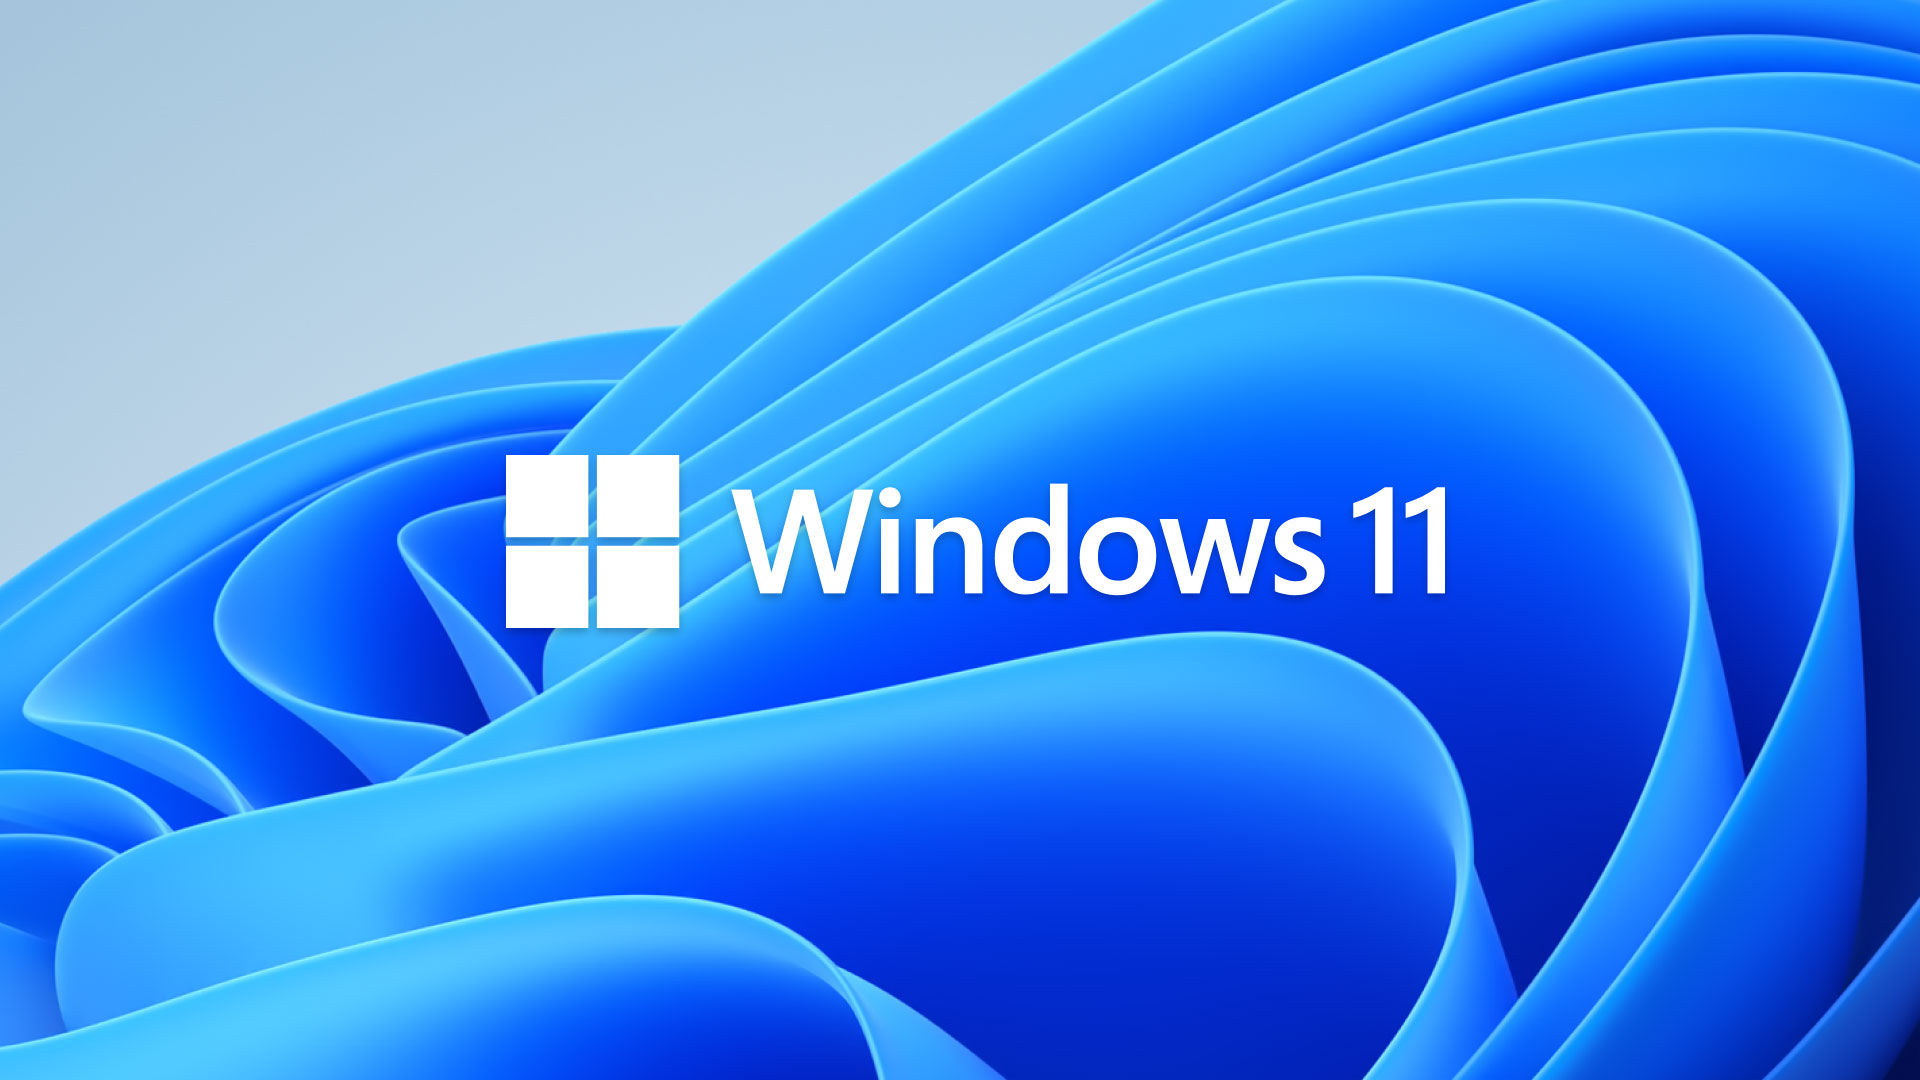 Windows 11 loqosu